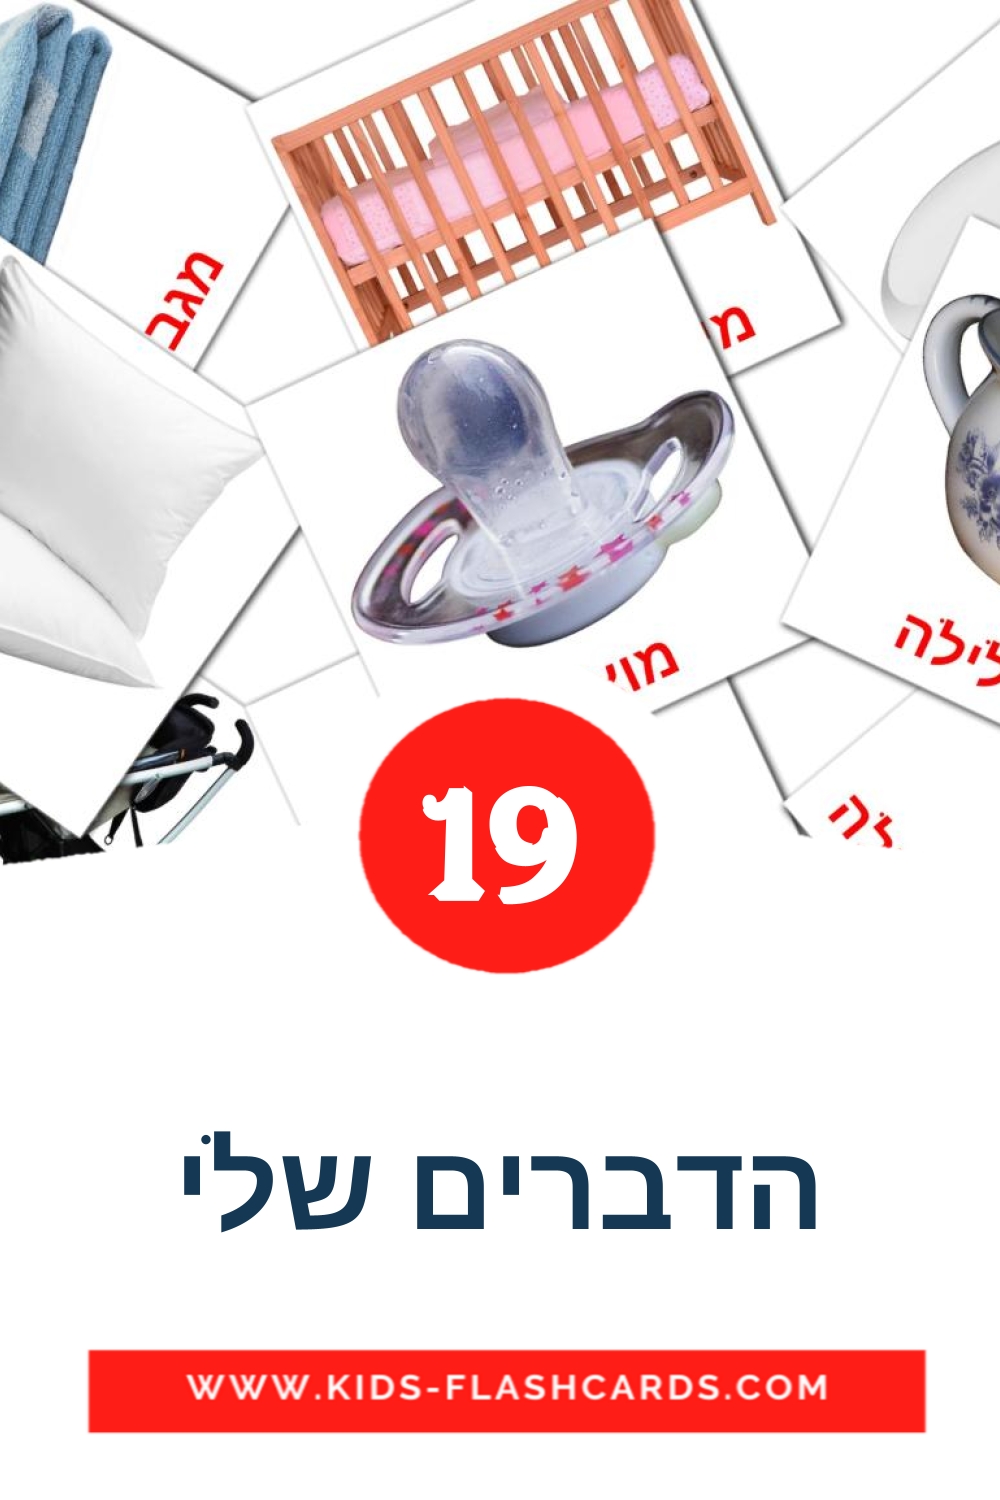 19 carte illustrate di הדברים שלי per la scuola materna in ebraico